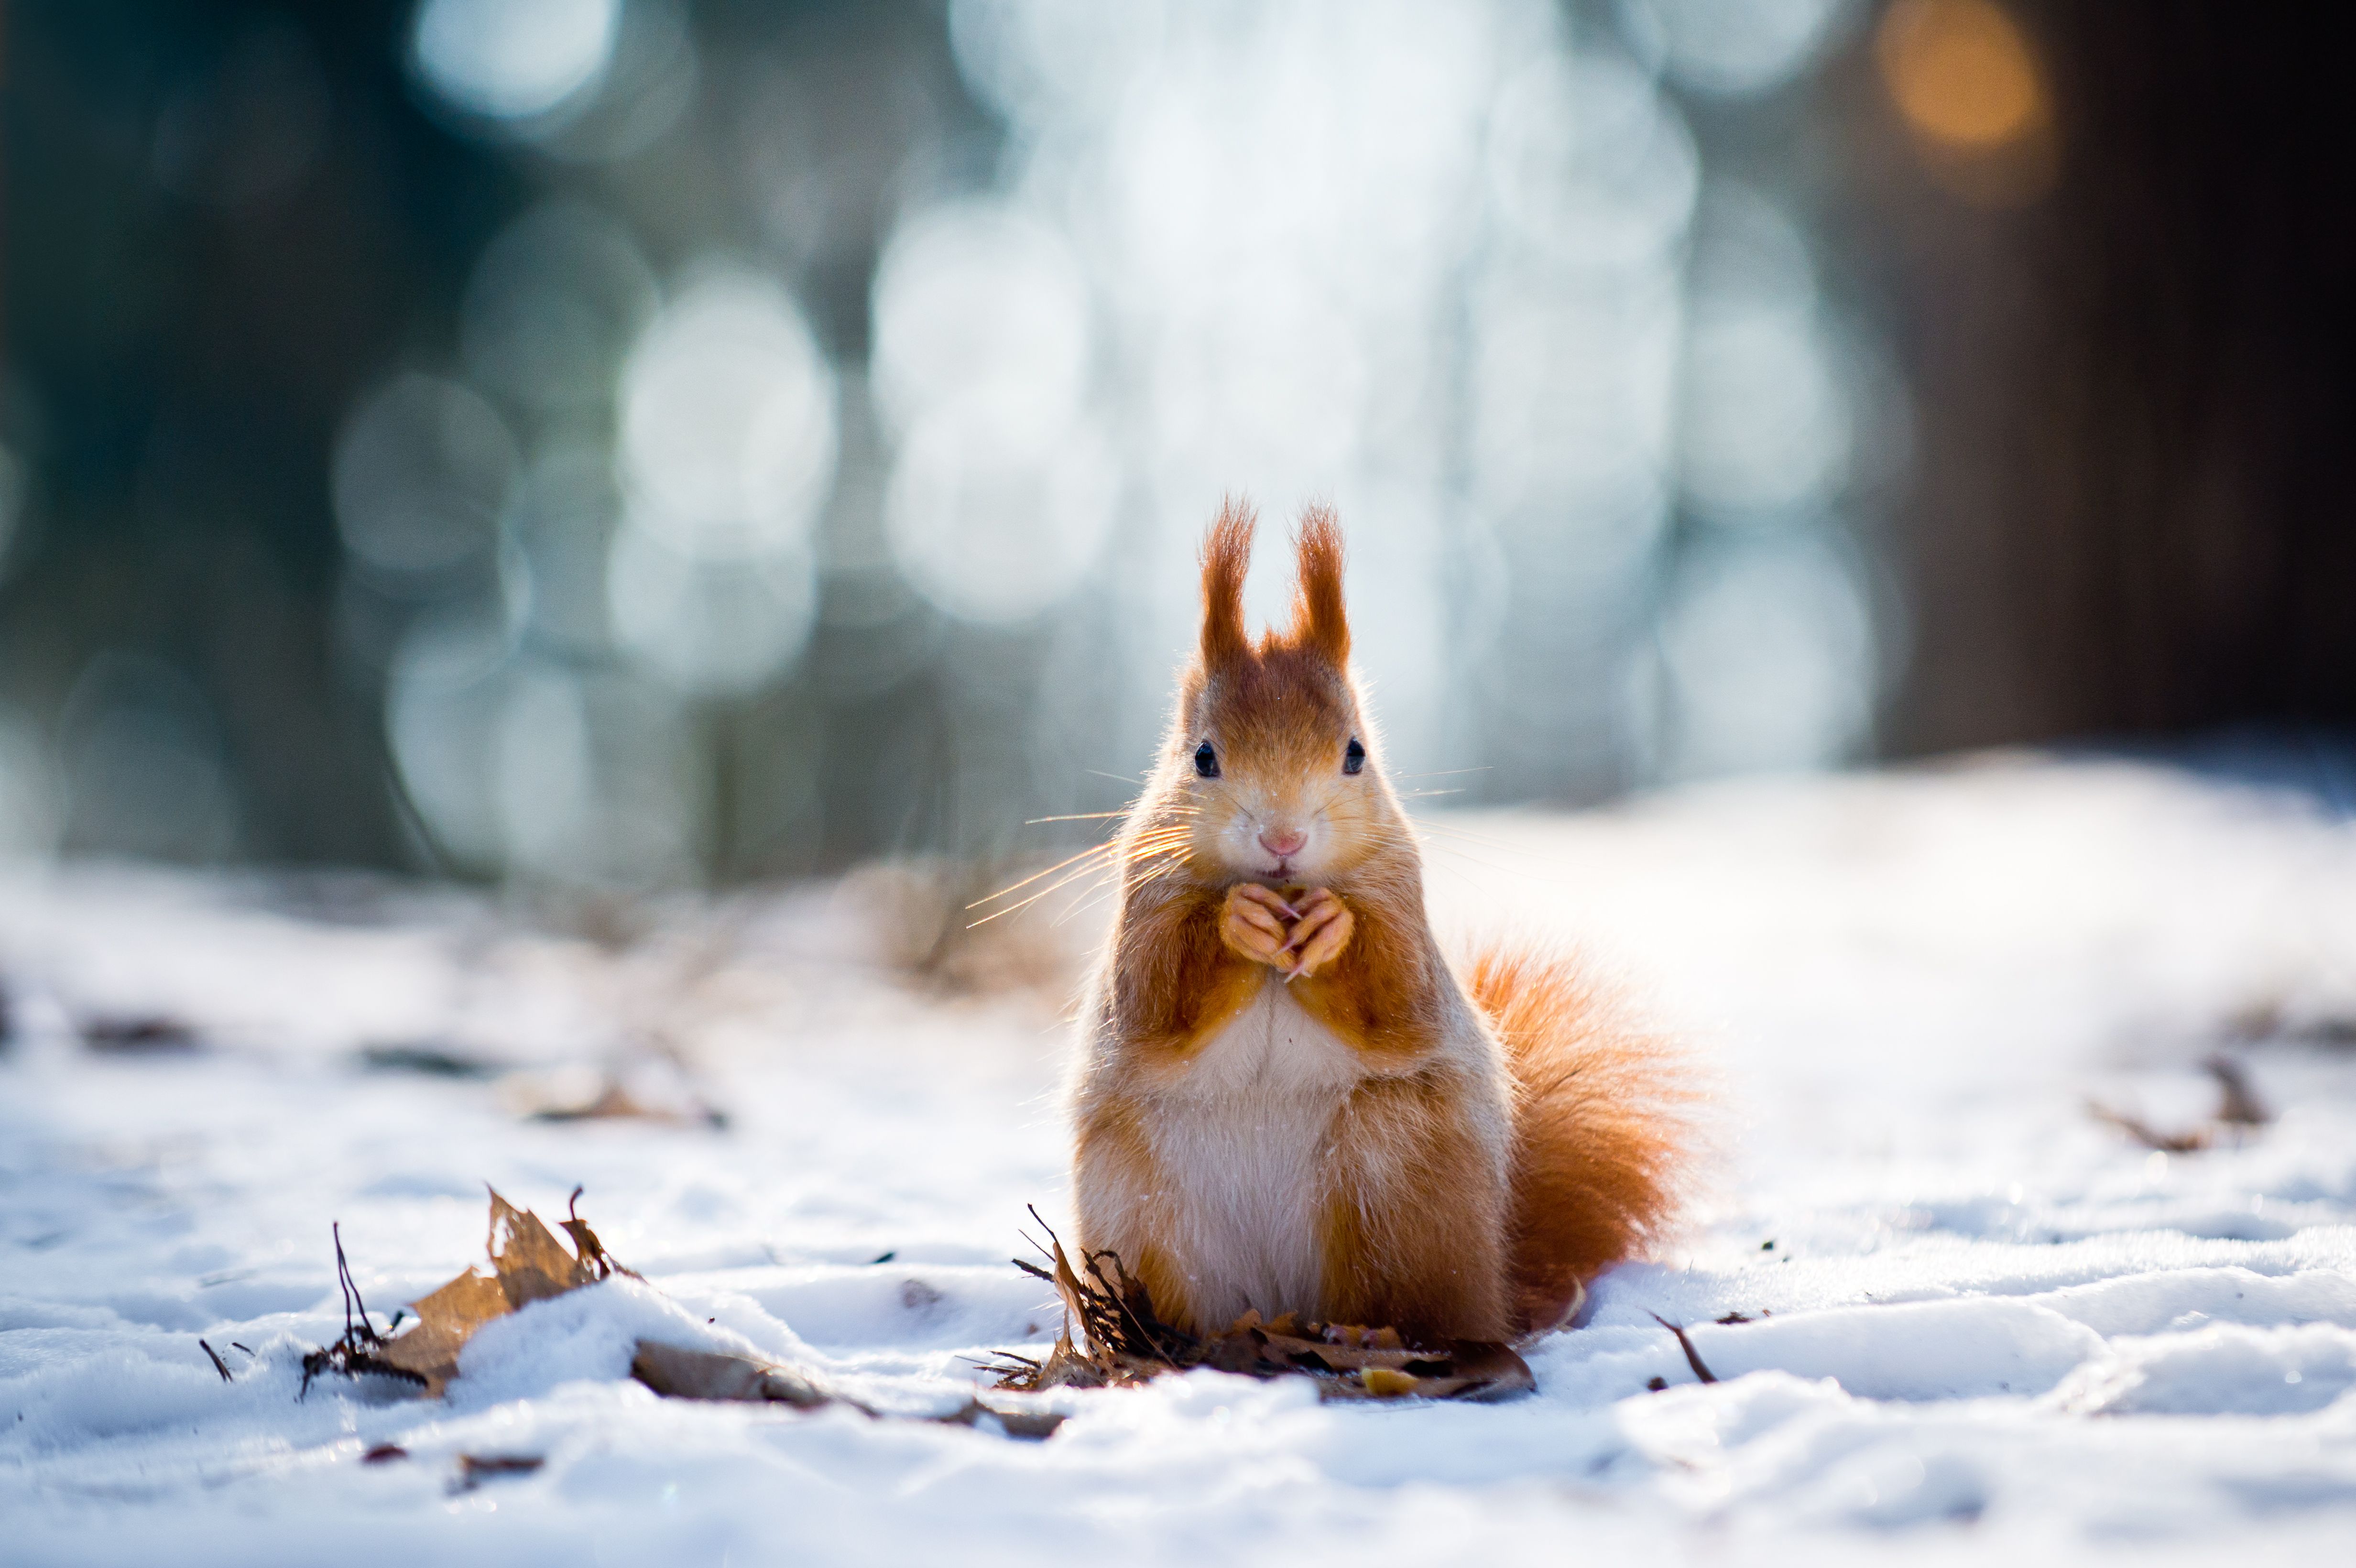  Winter Tiere Hintergrundbild 4928x3280. Bilder von Eichhörnchen Nagetiere Winter orange rot Schnee 4928x3280